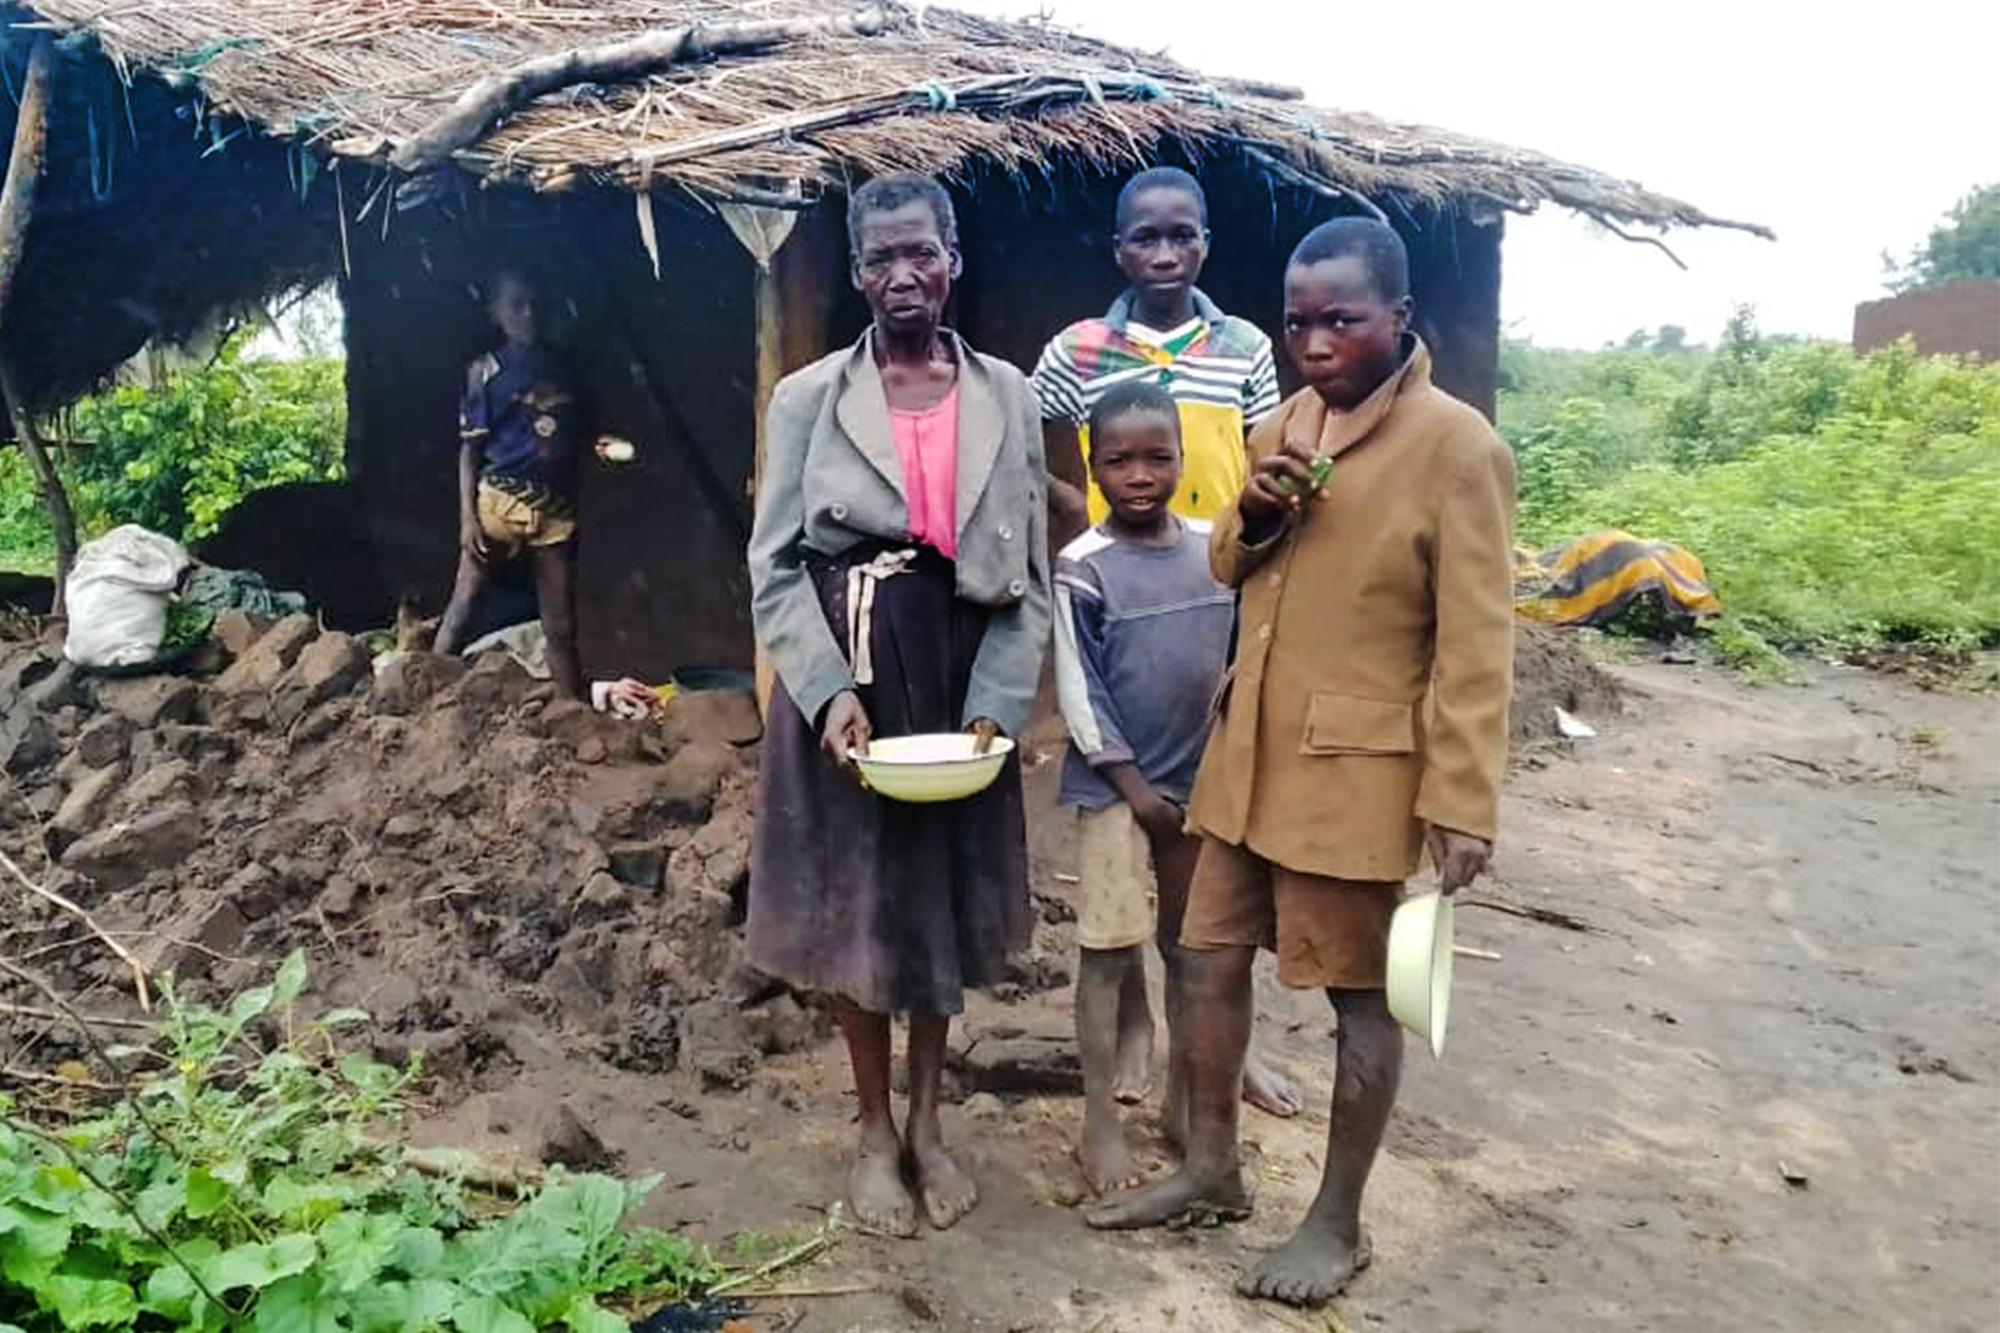 En familj i Malawi står utanför en hydda som har blivit förstörd av cyklonen.